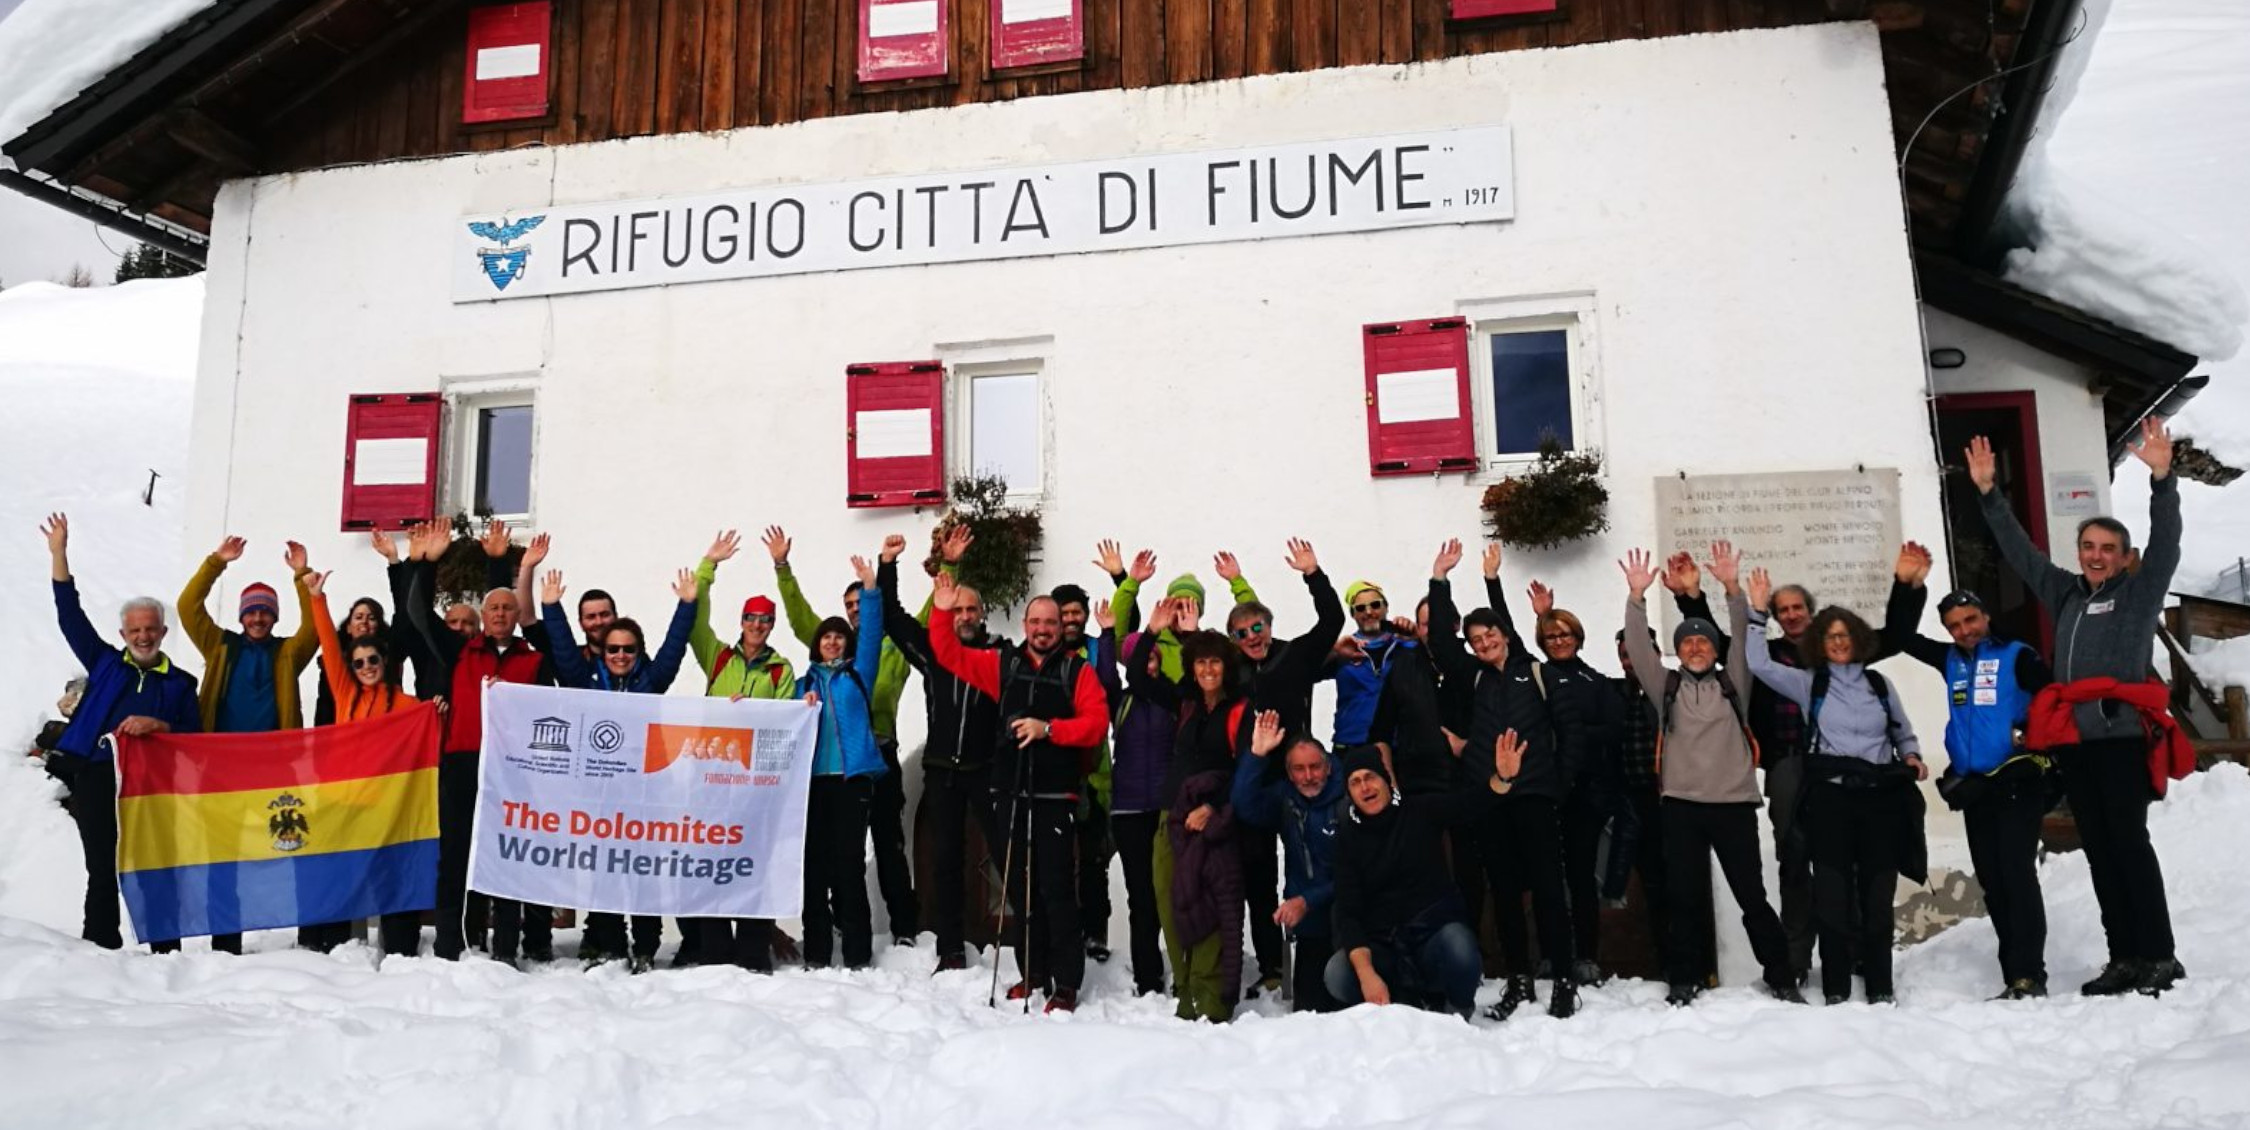 Hut managers of the UNESCO Dolomites at Rifugio Città di Fiume